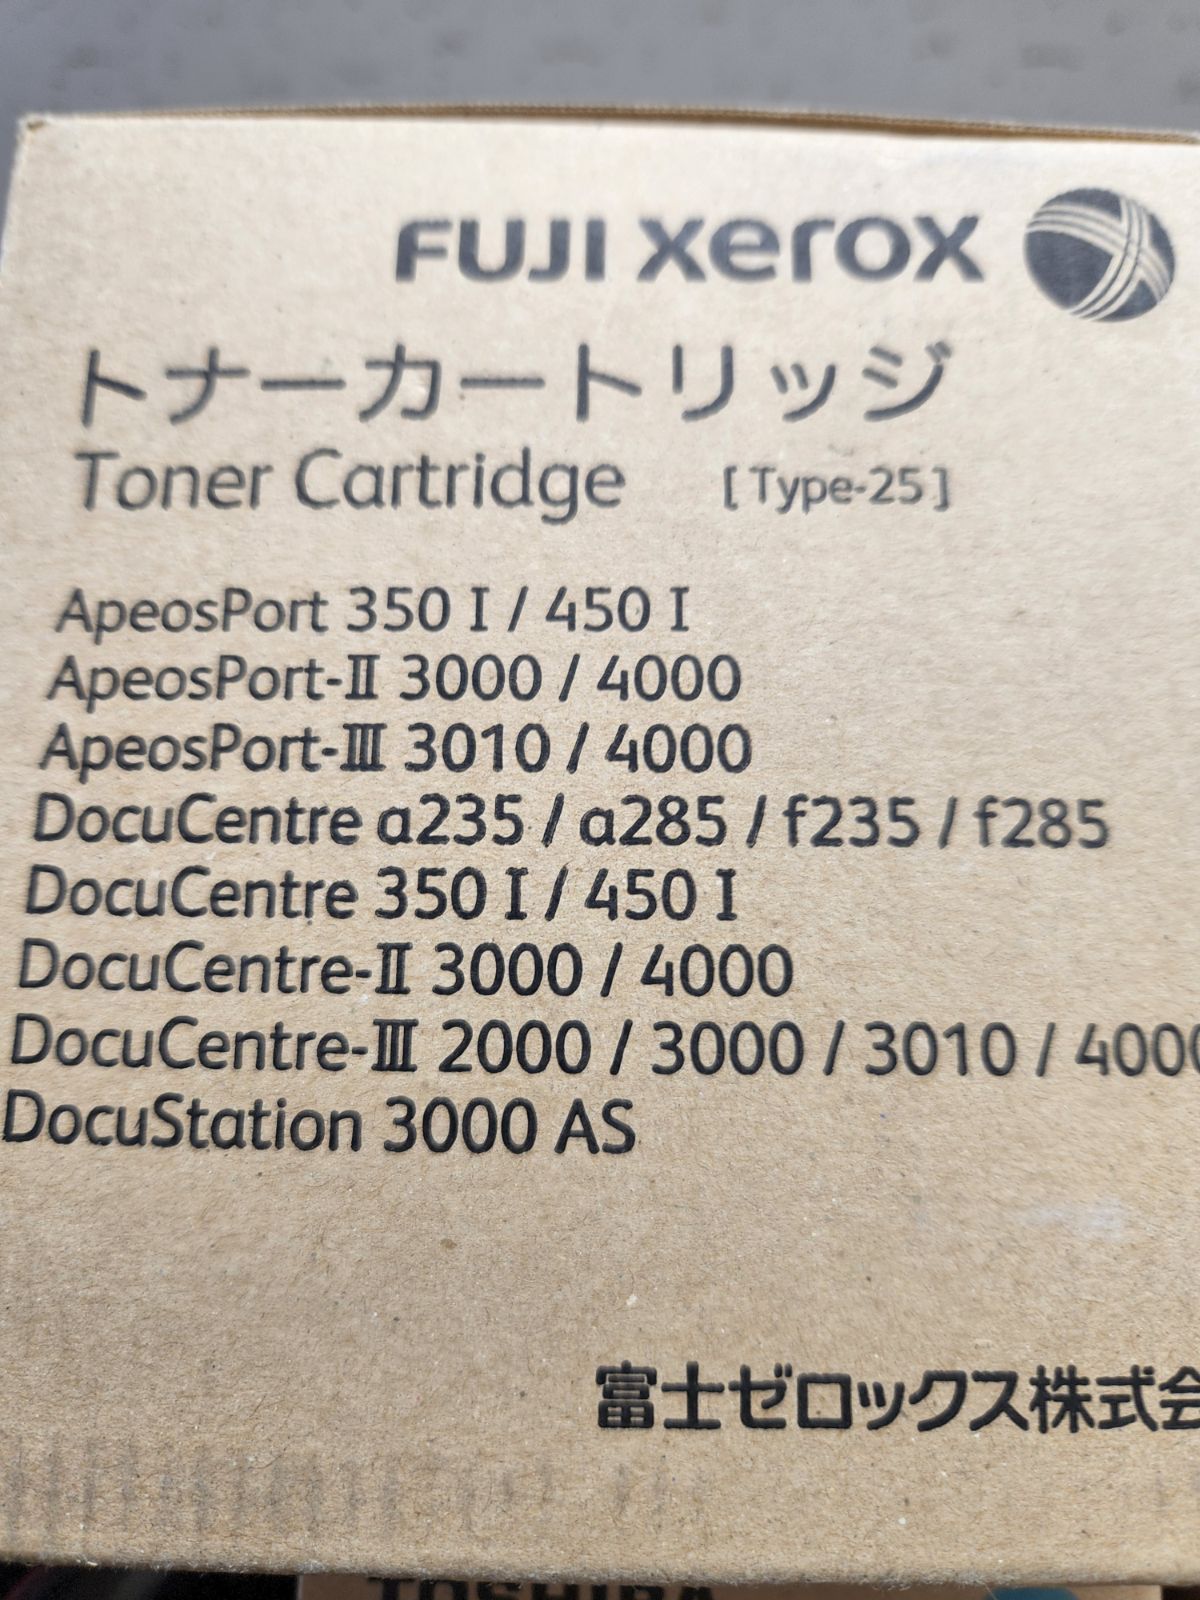 xerox ゼロックス トナー Type-25 CT200414 文具・雑貨のお店 ぷうとせん メルカリ